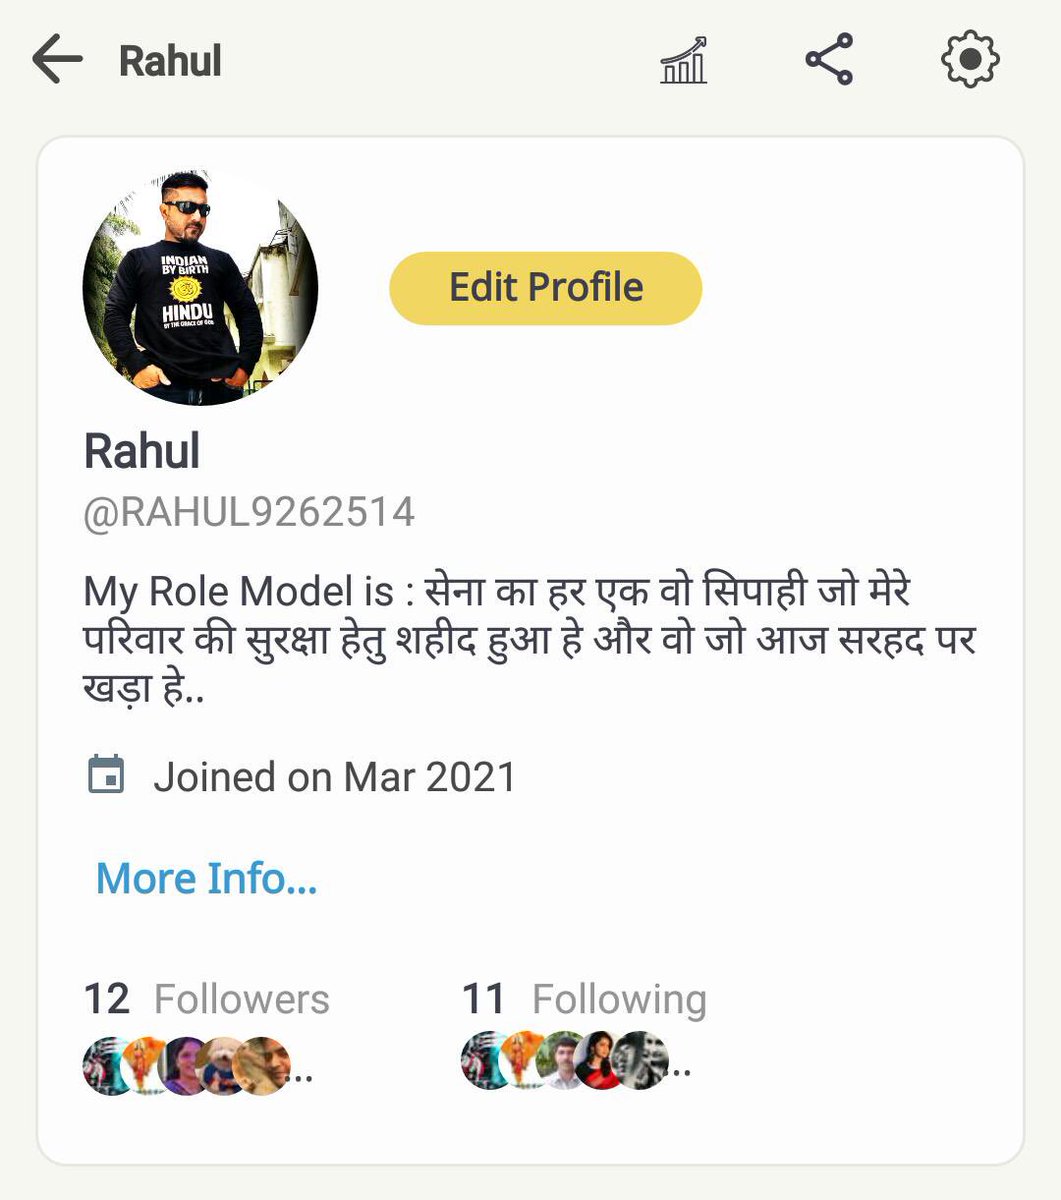 ट्विटर ने राहुल भाई का अकॉउंट उड़ा दिया है, आप चाहो तो भाई को Koo पर फॉलो कर सकते हो 🙏 @RAHUL9262514 
Pls follow 🙏